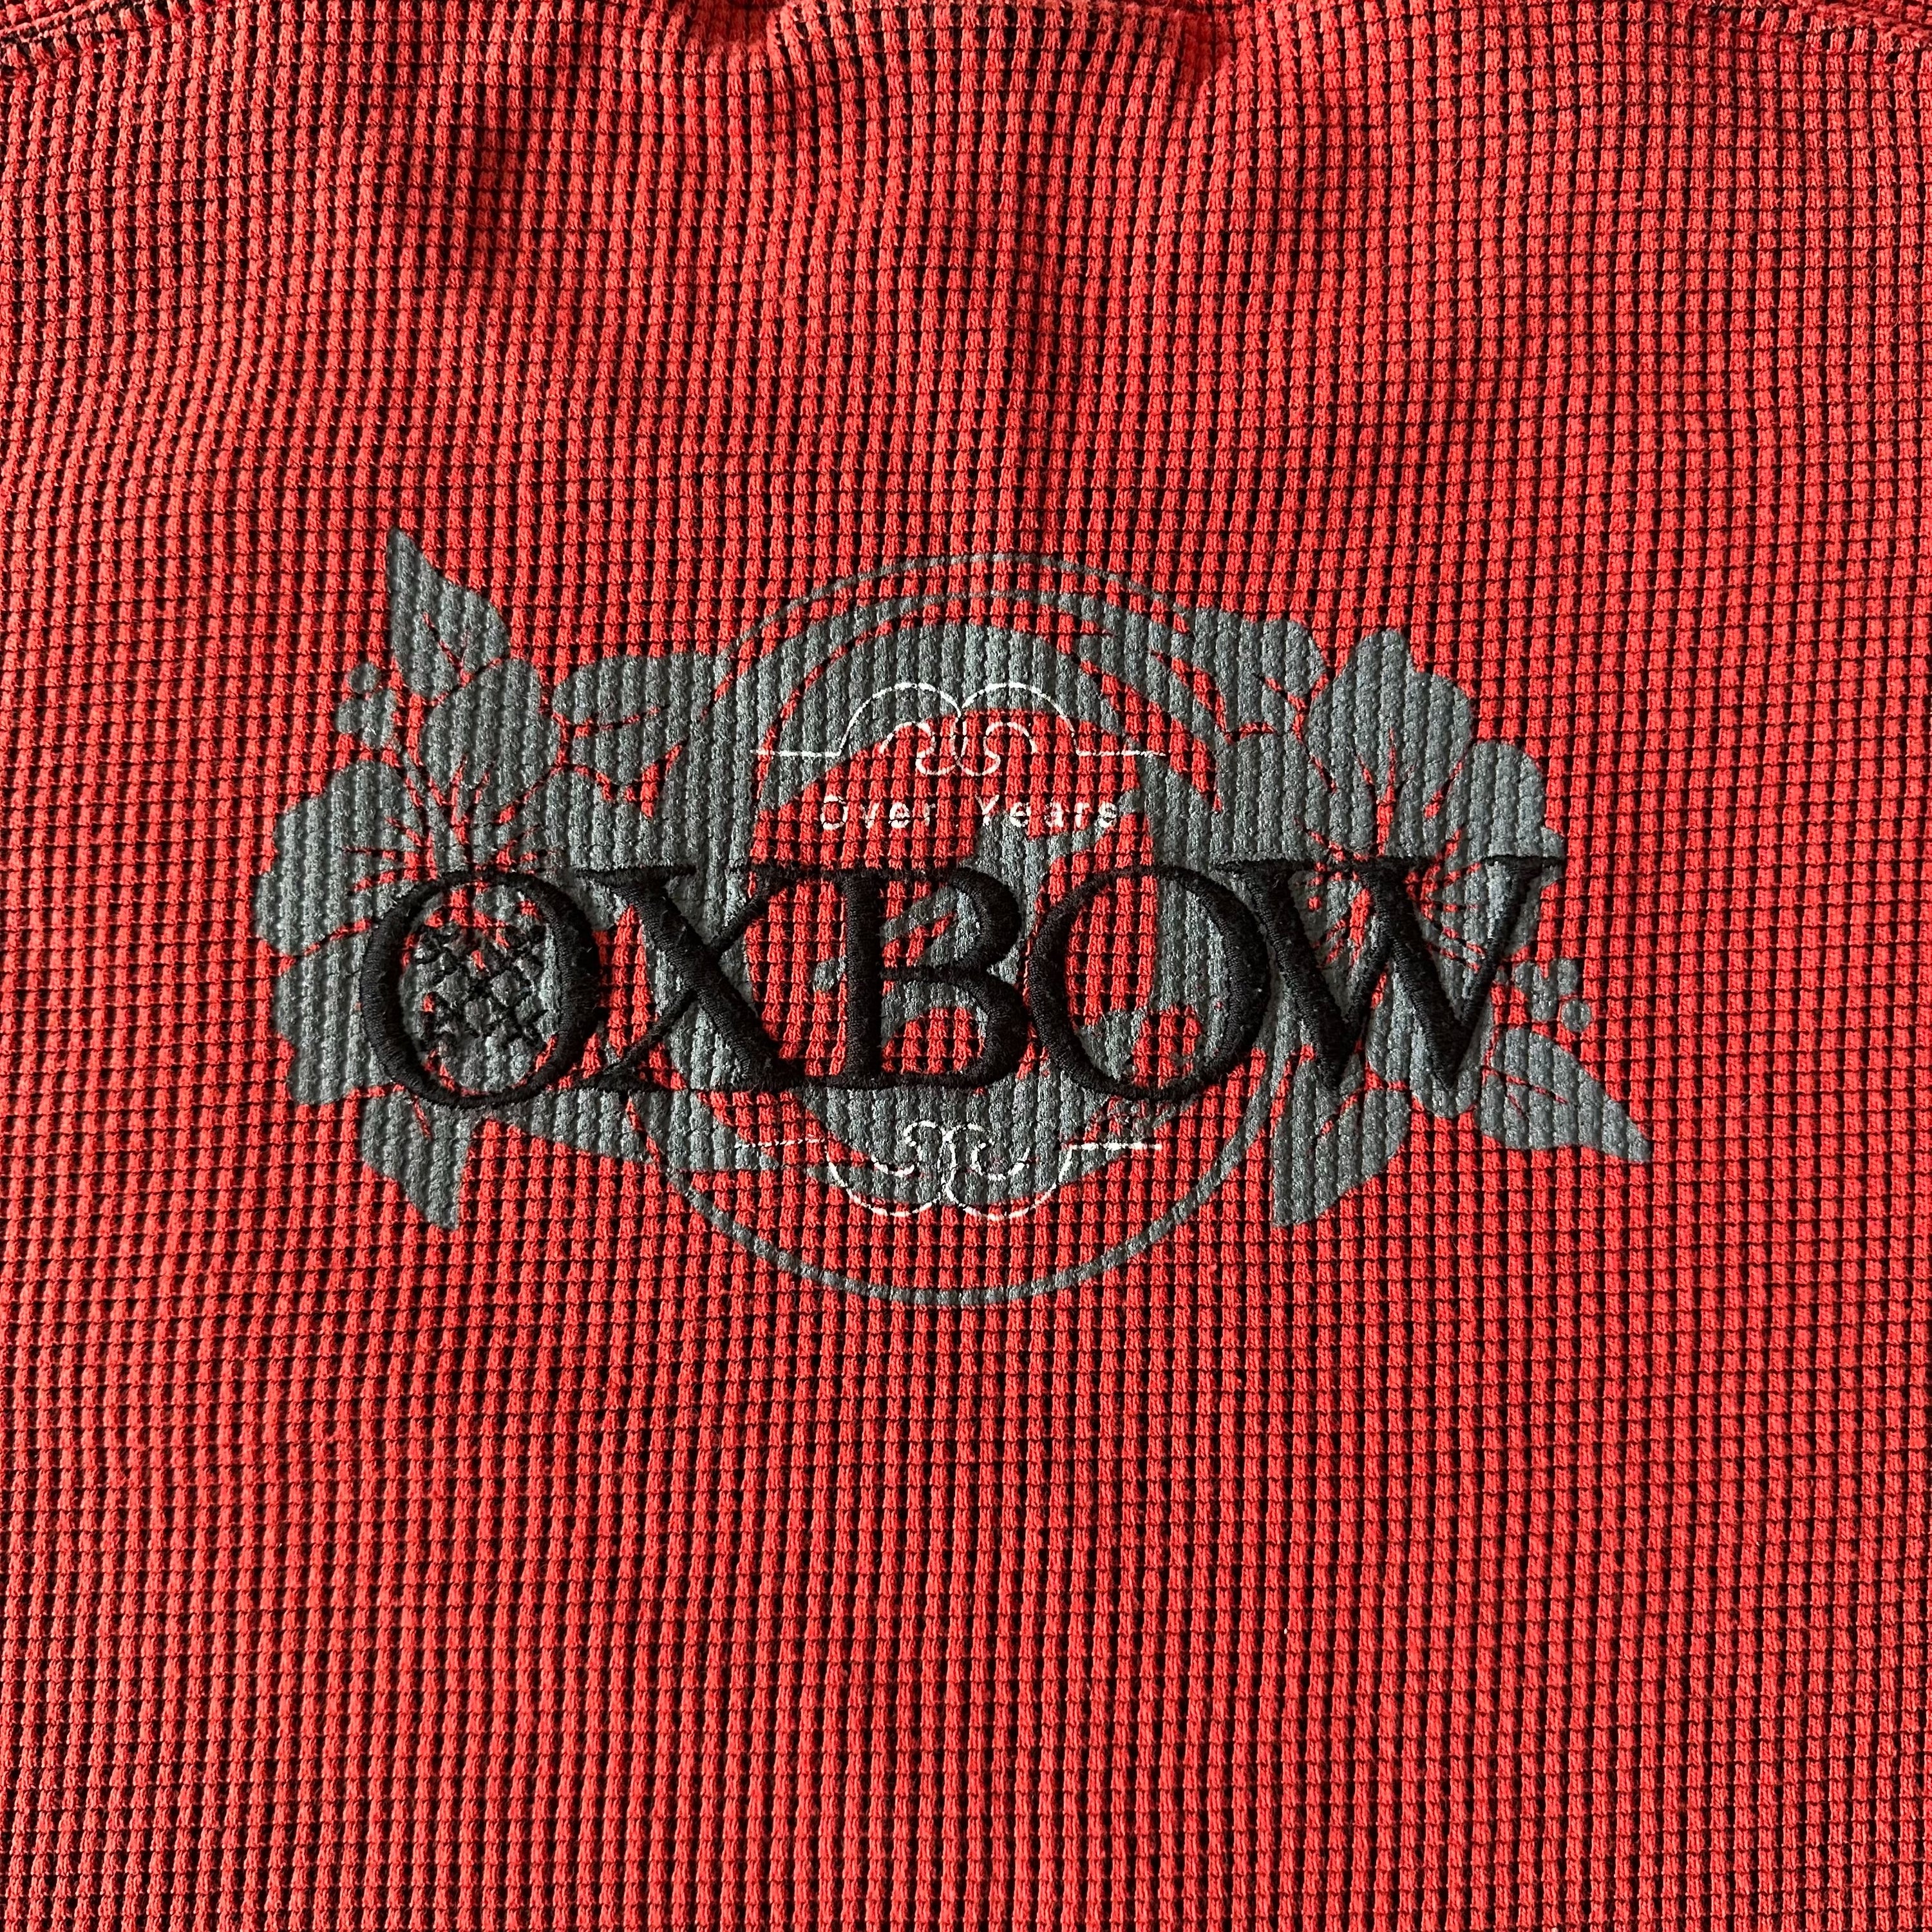 Vintage Oxbow Sweater - Medium